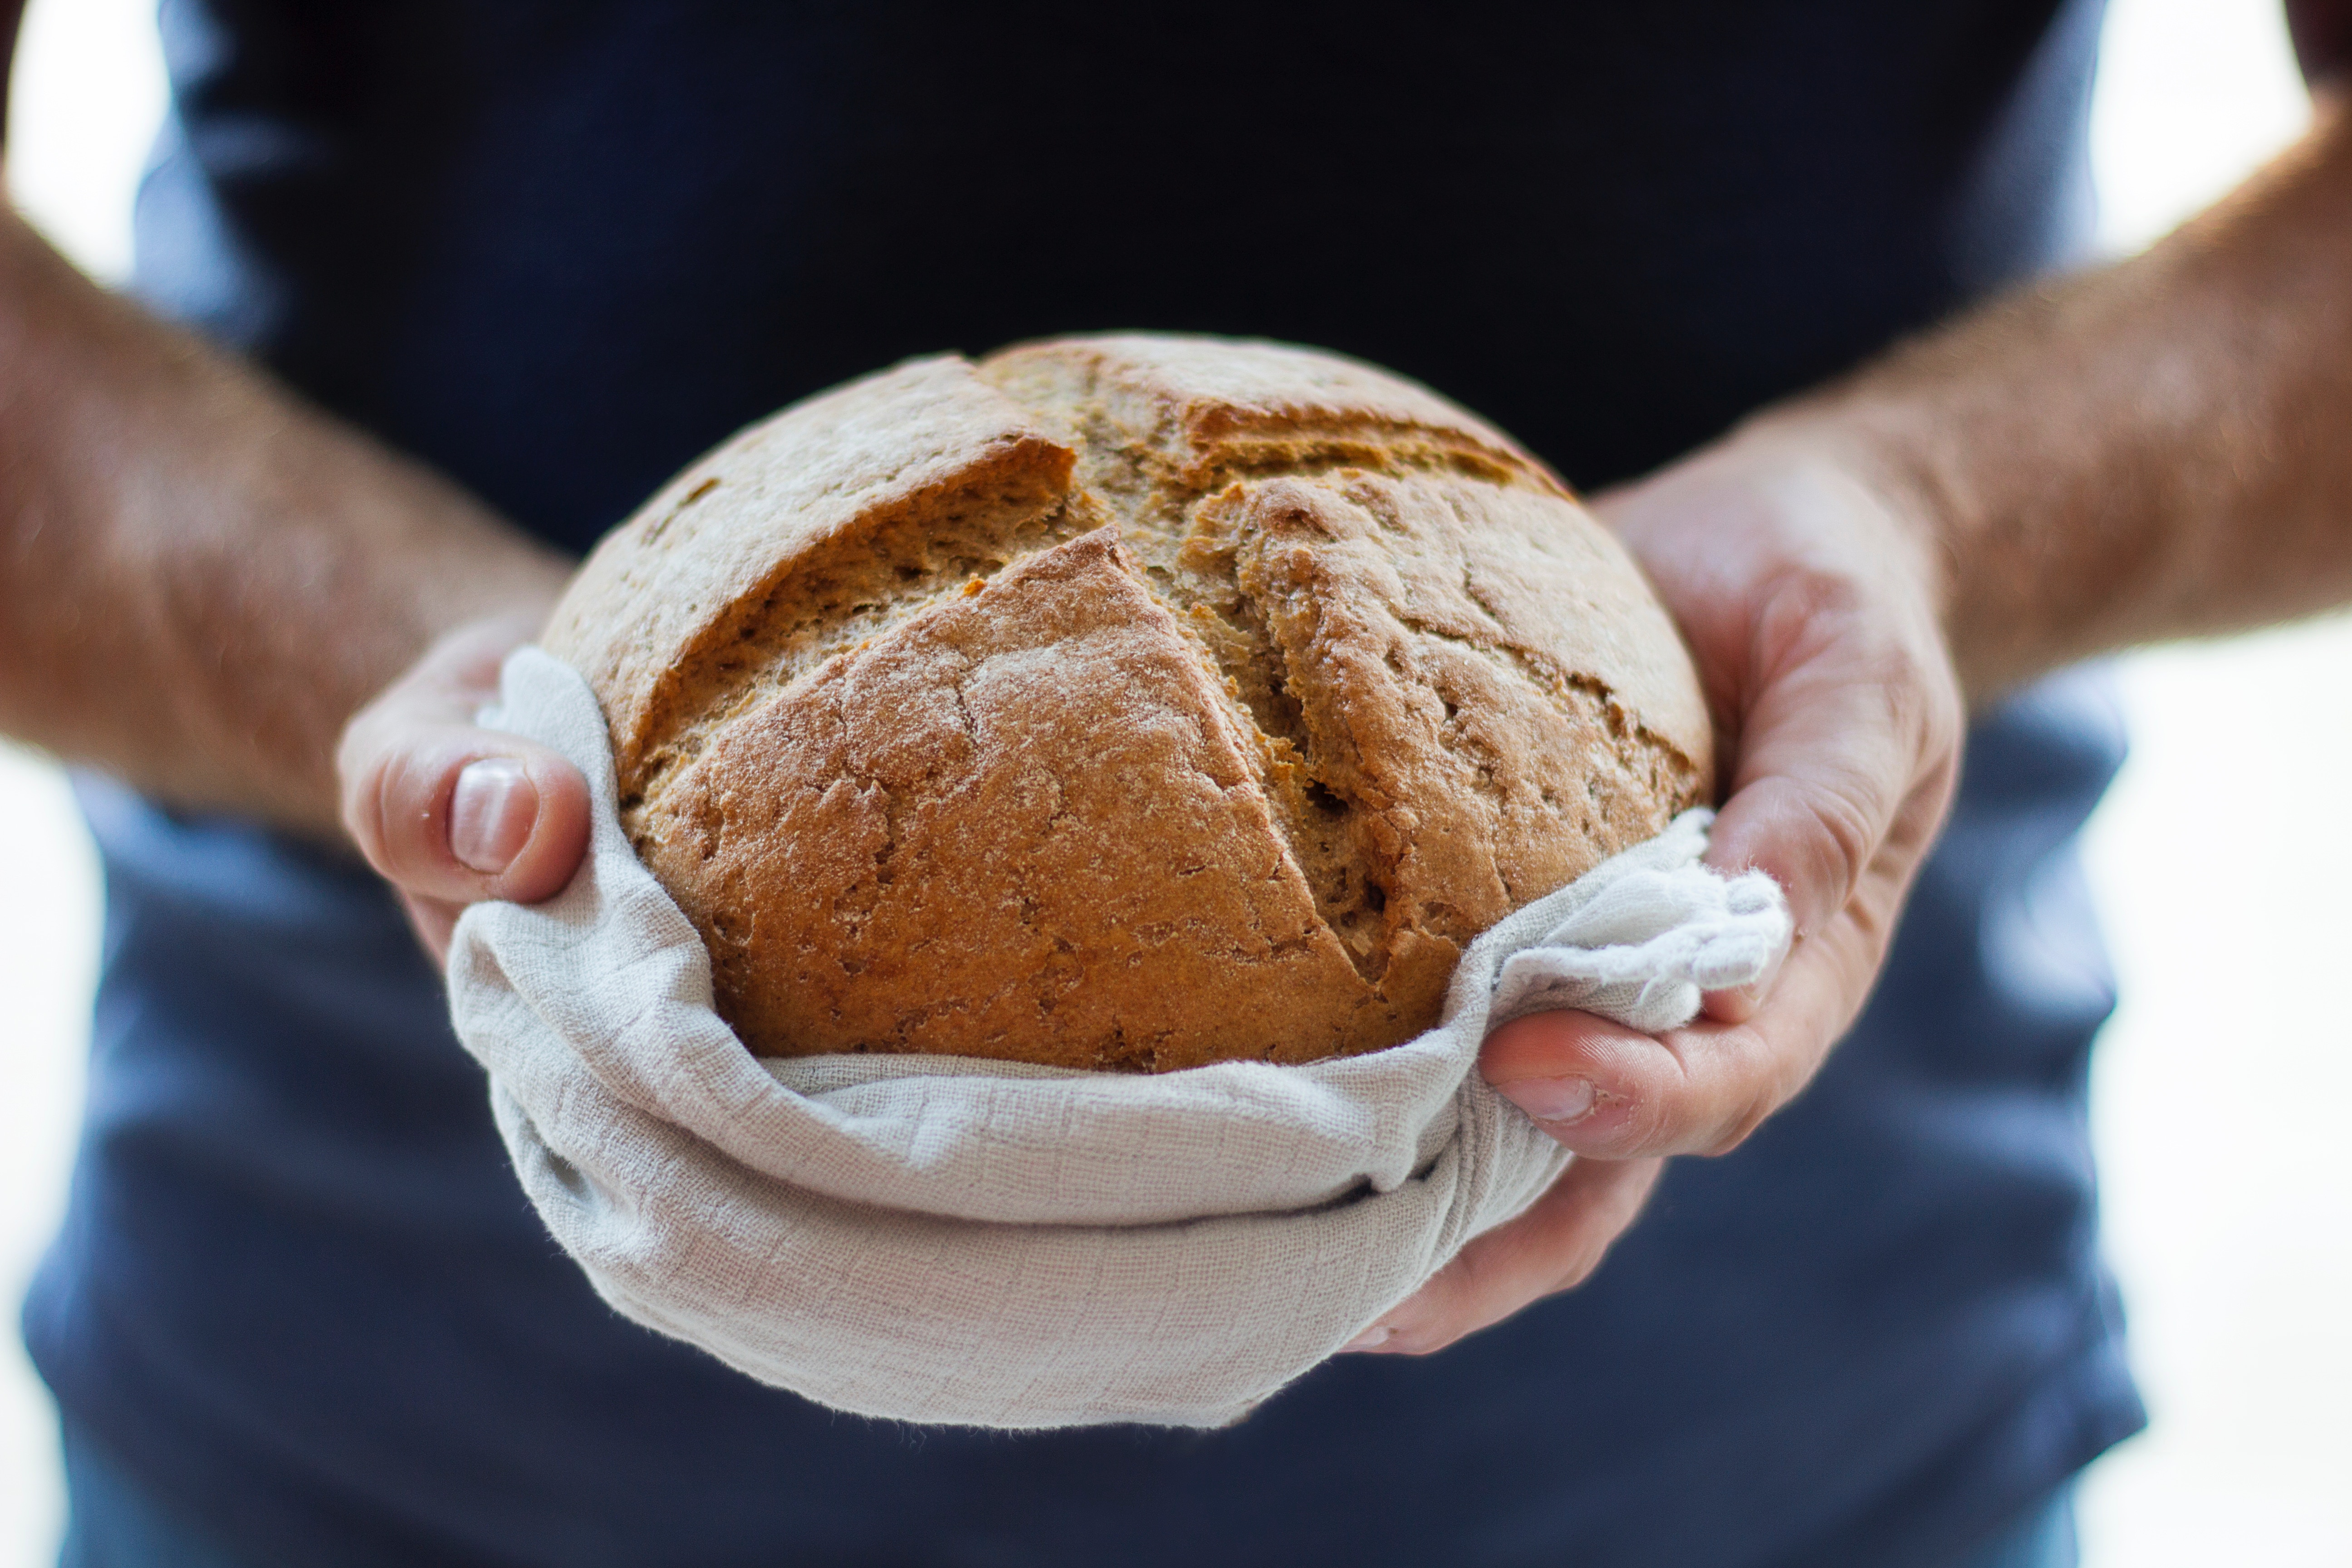 ברכת 'המוציא' על הלחם – שאלות ותשובות מאתר 'לימודי דעת'